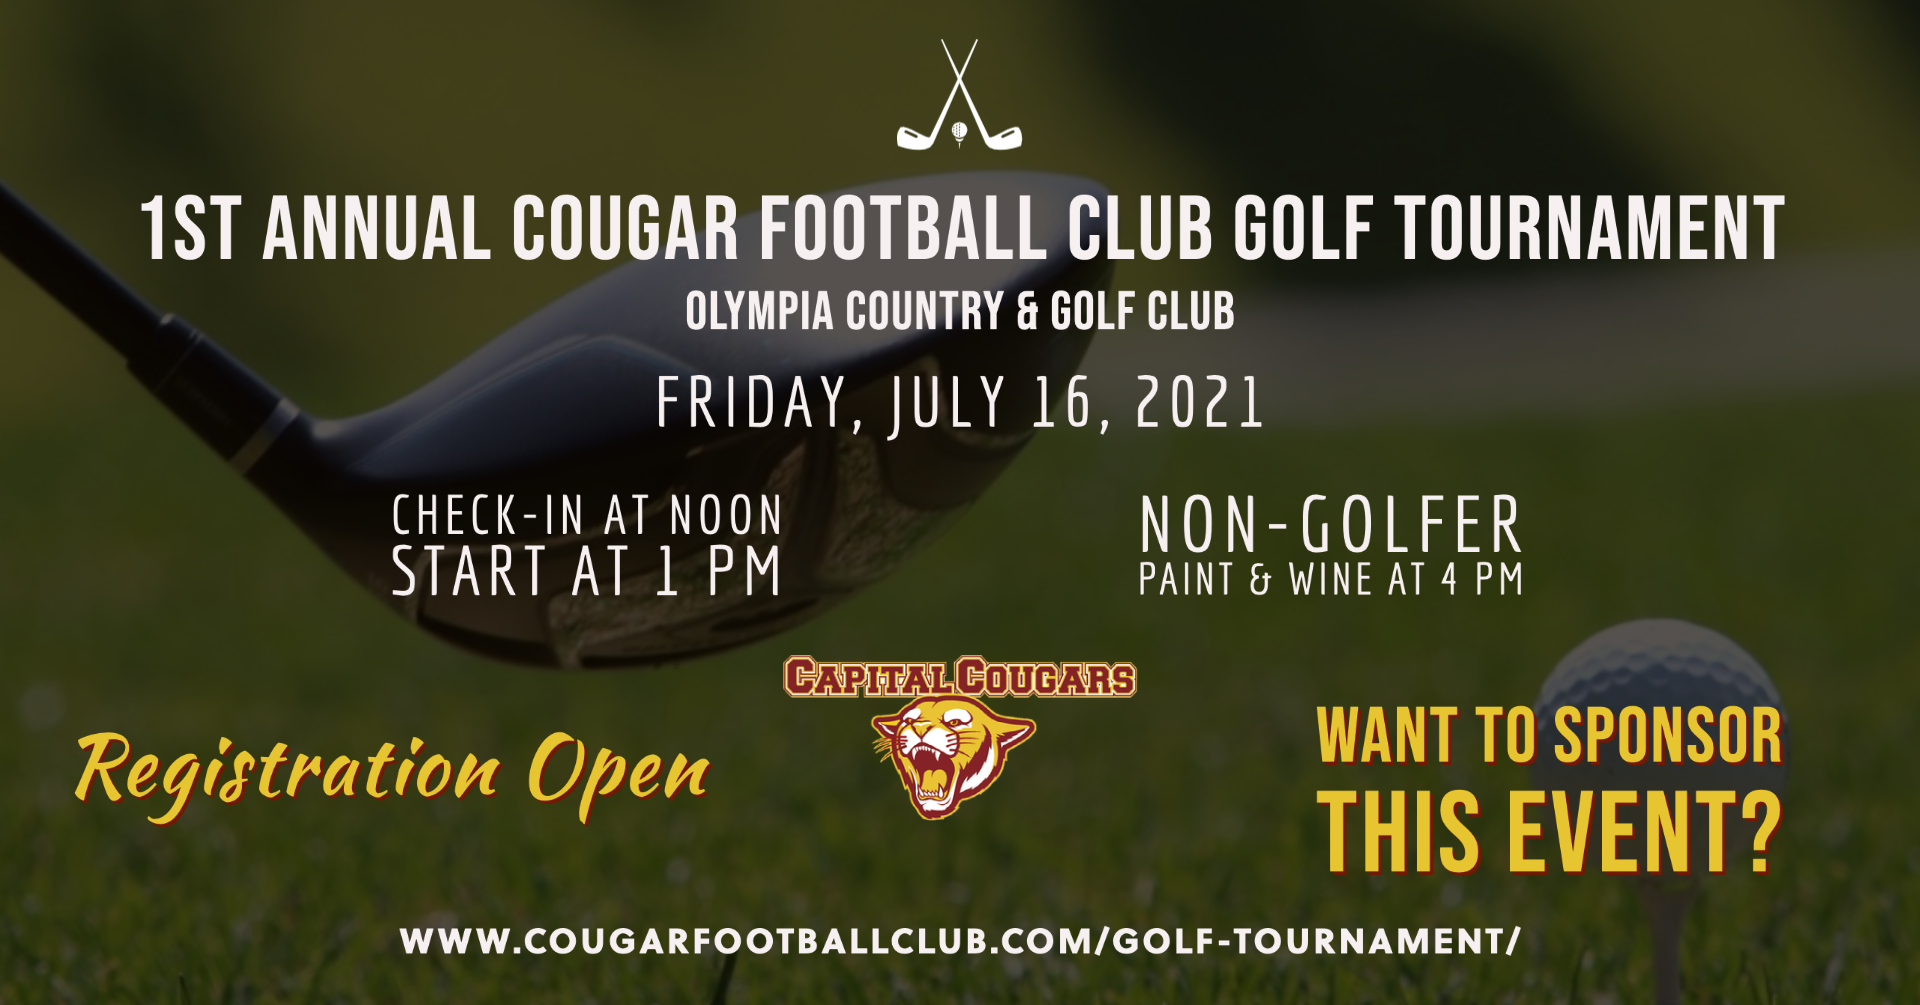 Cougar Football Club 1st Annual Golf Tournament